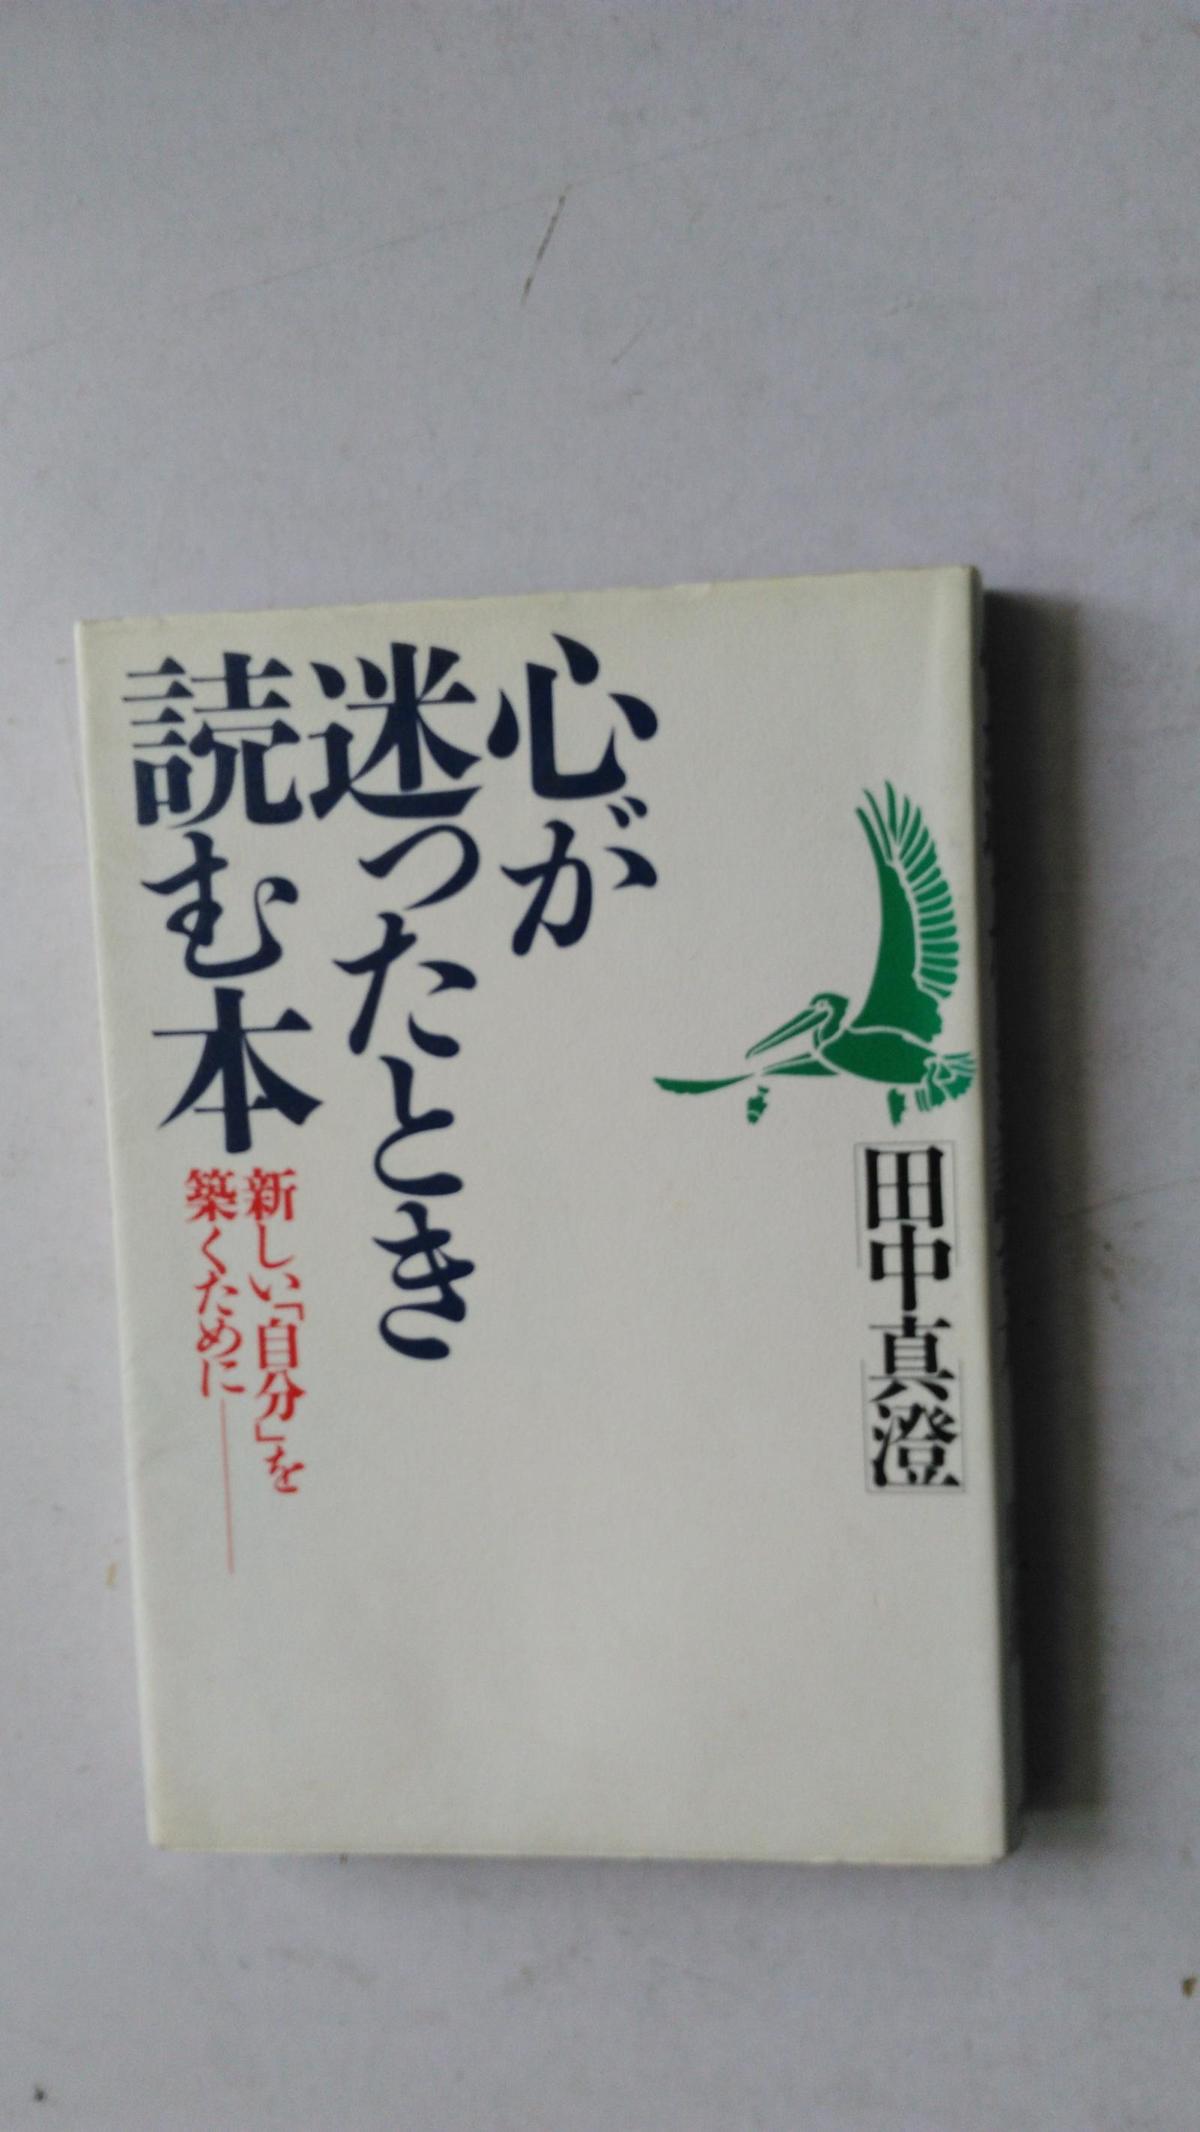 日文原版 心が迷ったとき読む本 : 新しい「自分」を筑くために   32开